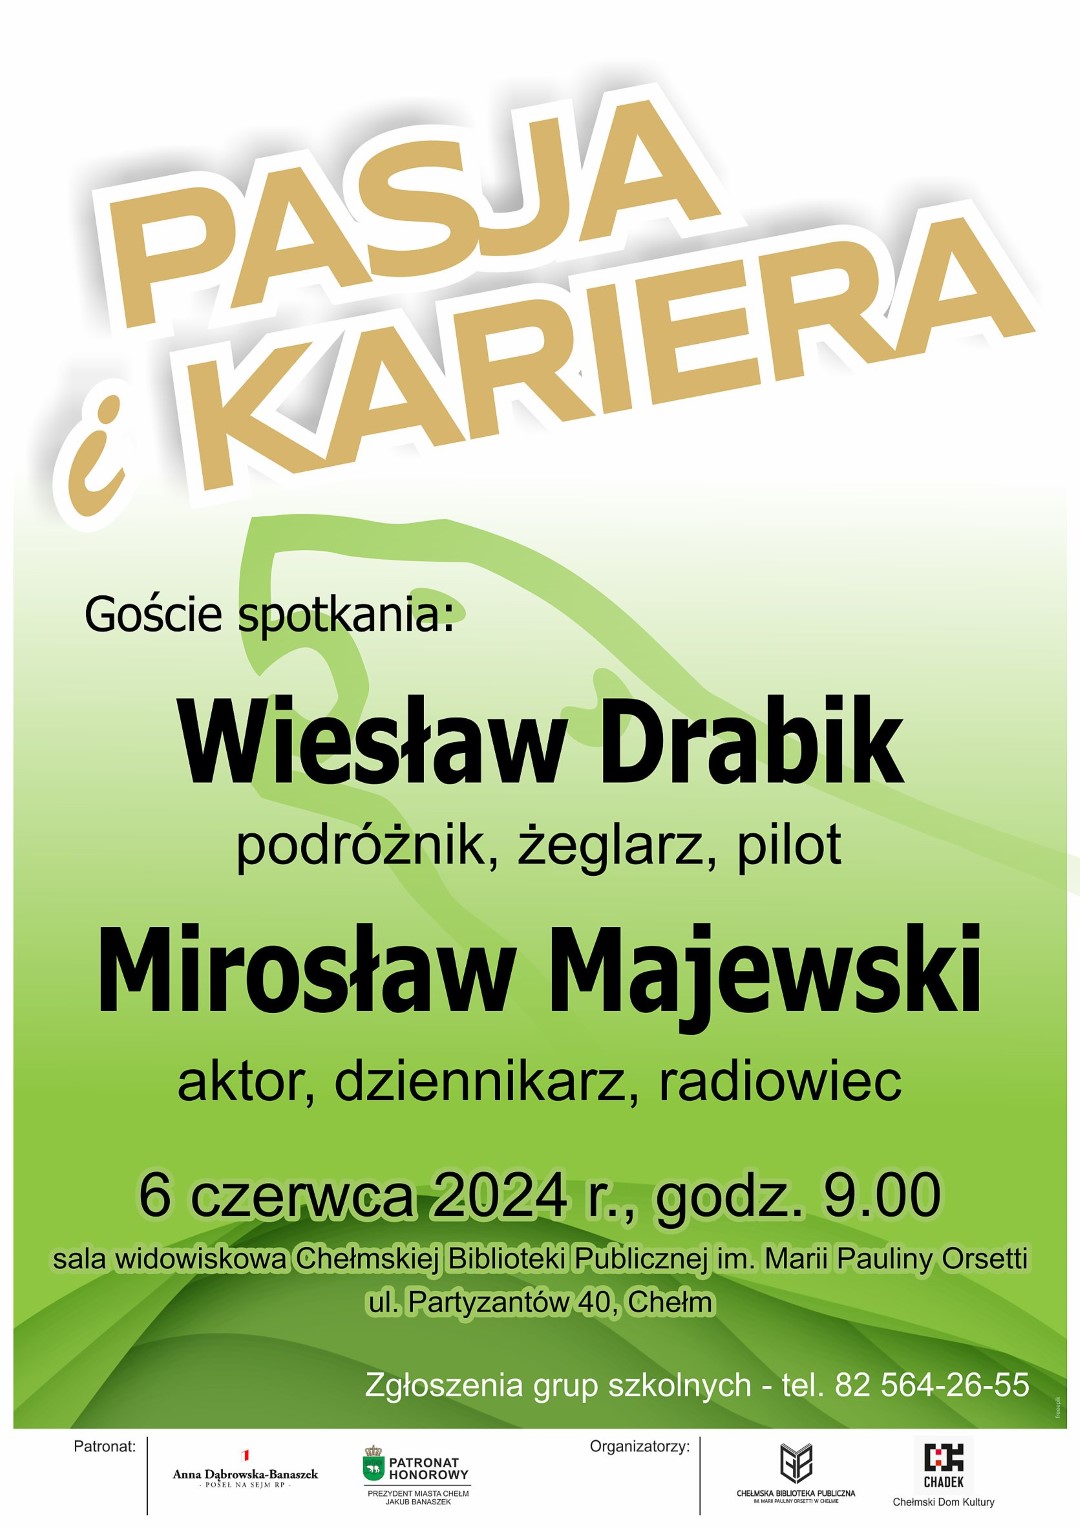 Plakat promujący spotkanie Pasja i kariera Wiesław Drabik Mirosław Majewski